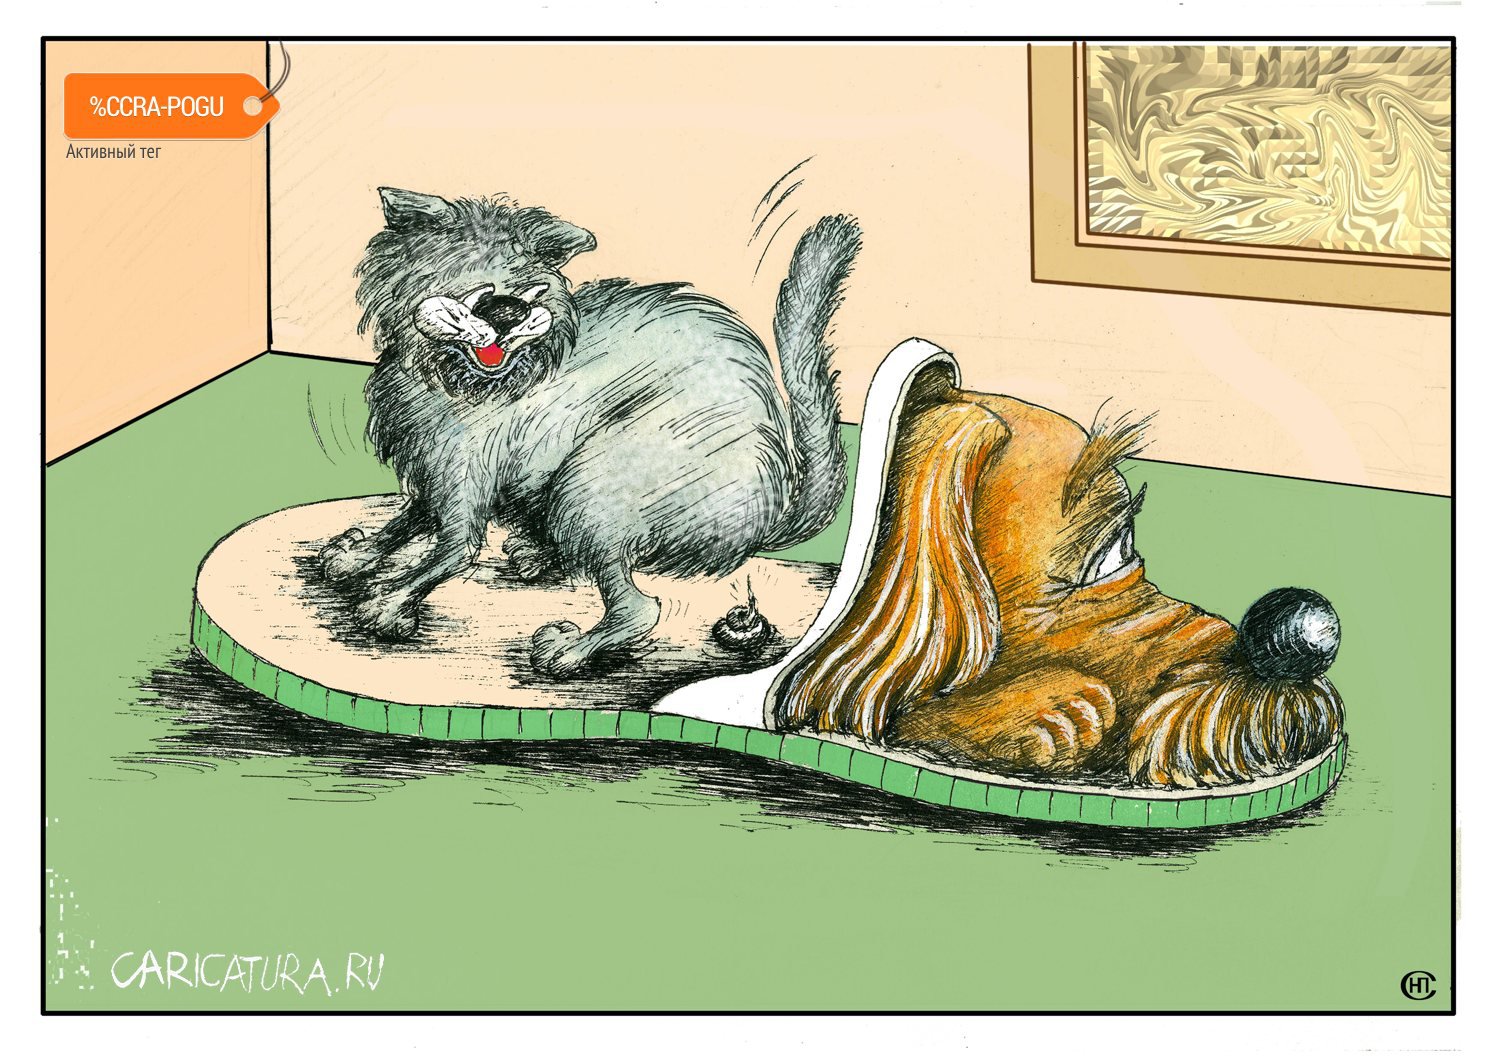 Карикатура "Кот в тапках или месть", Николай Свириденко